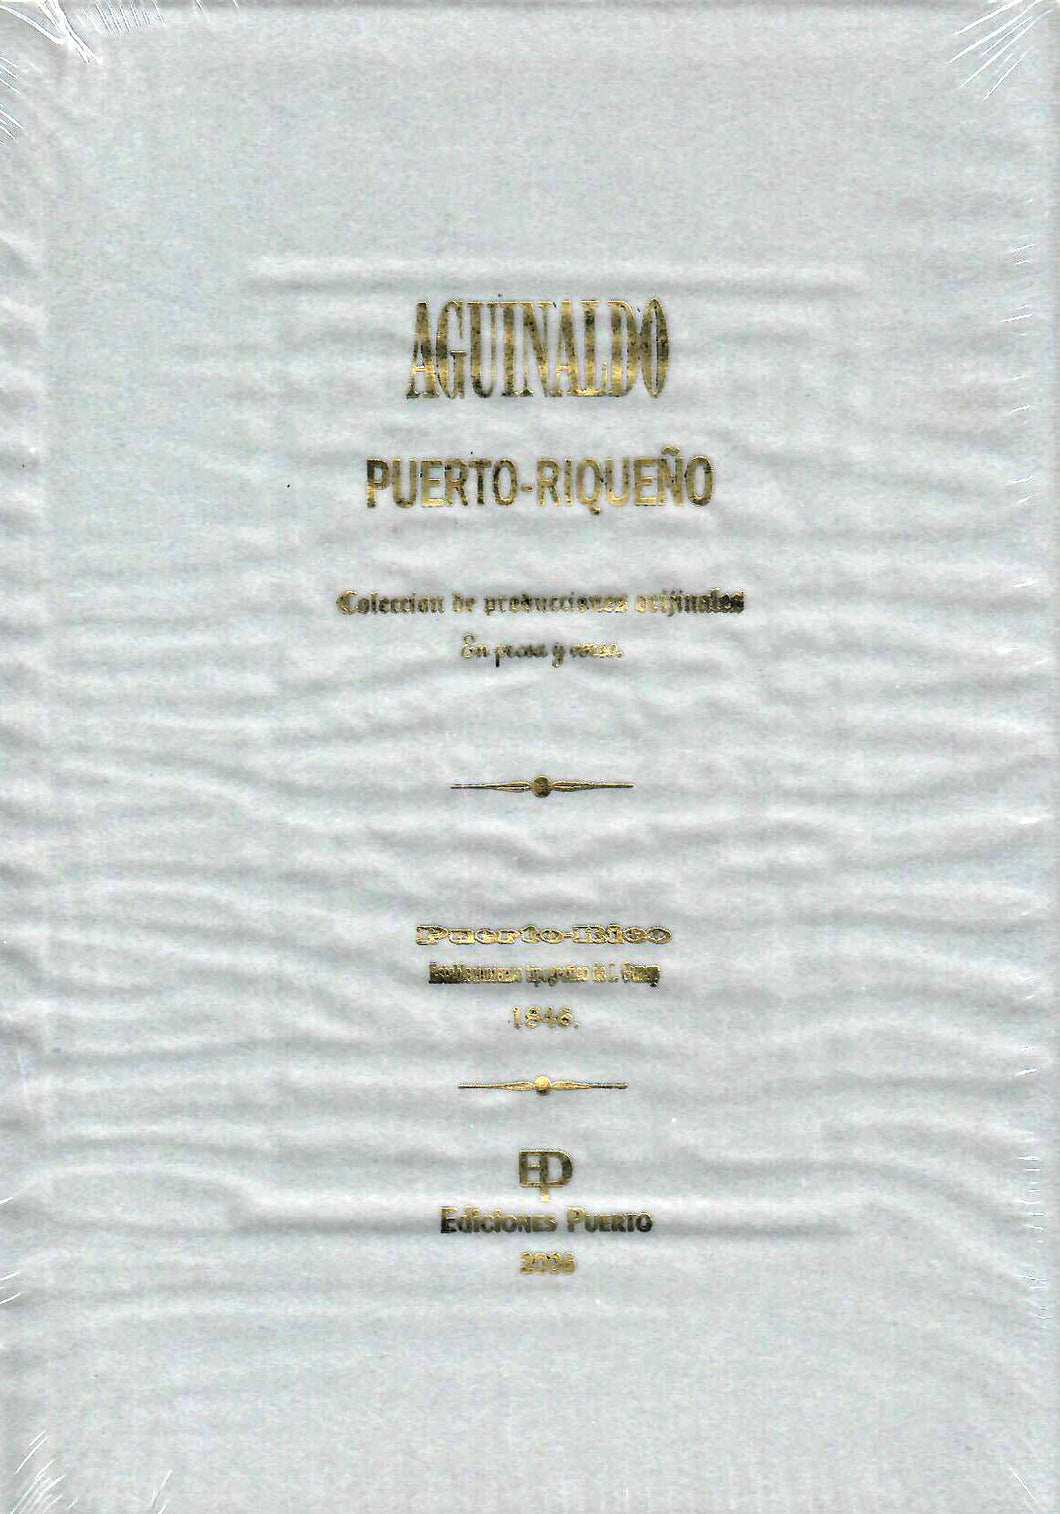 AGUINALDO PUERTO-RIQUEÑO: COLECCIÓN DE PRODUCCIONES ORIGINALES (1846)